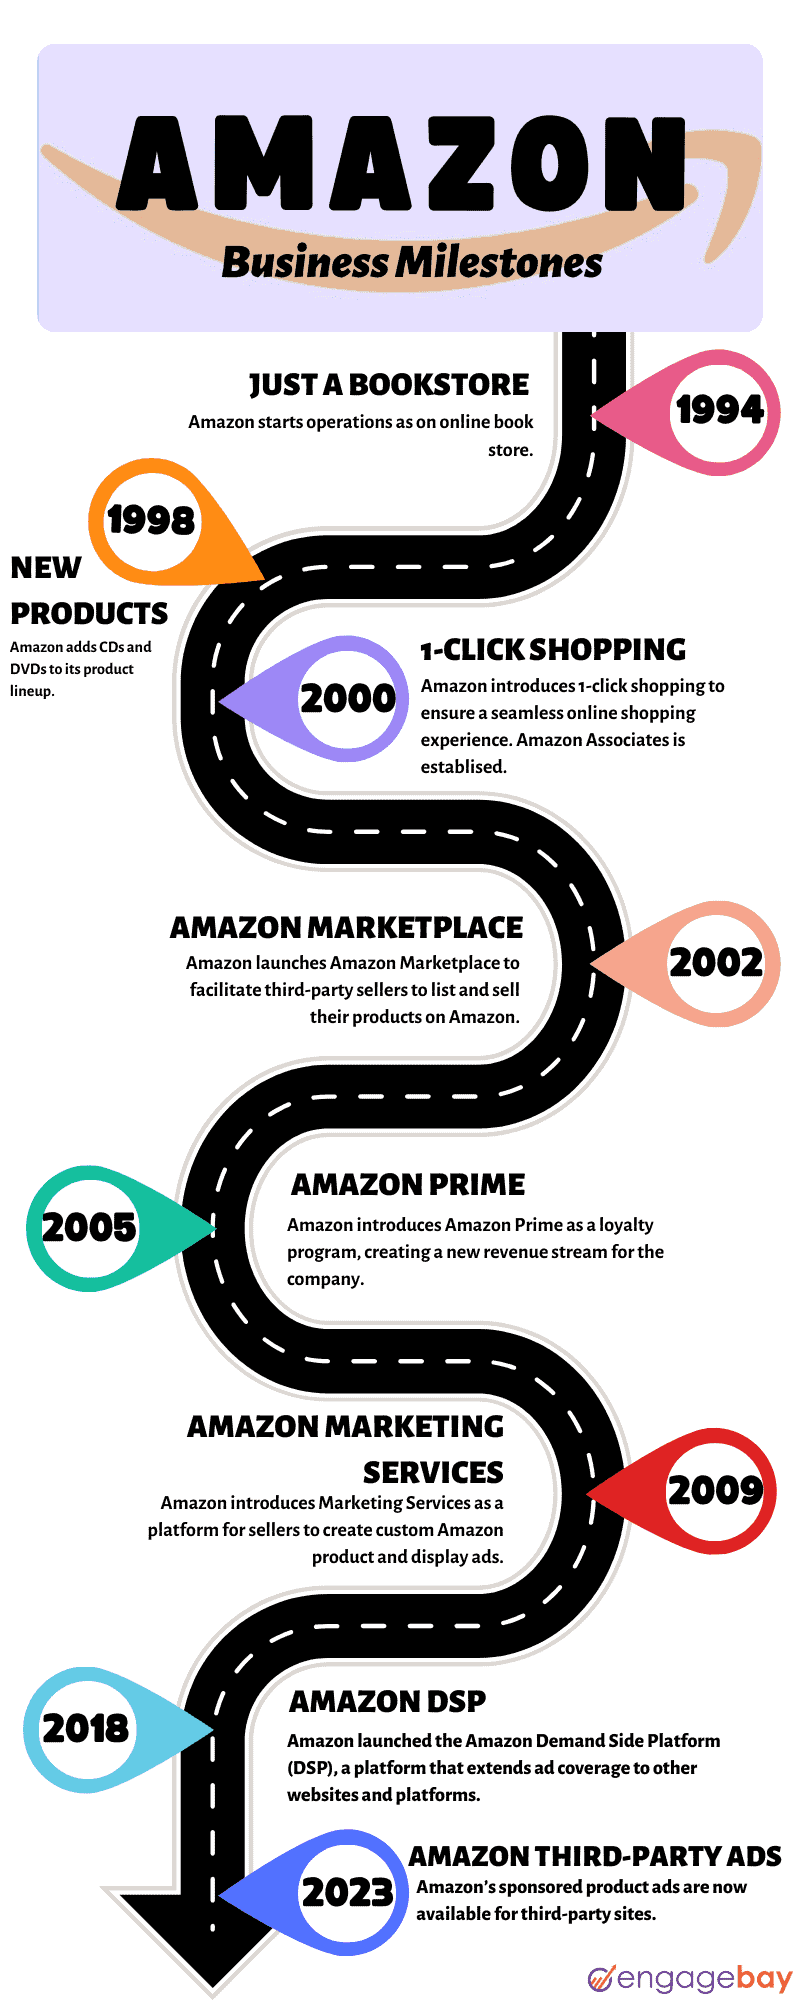 Amazon business milestones